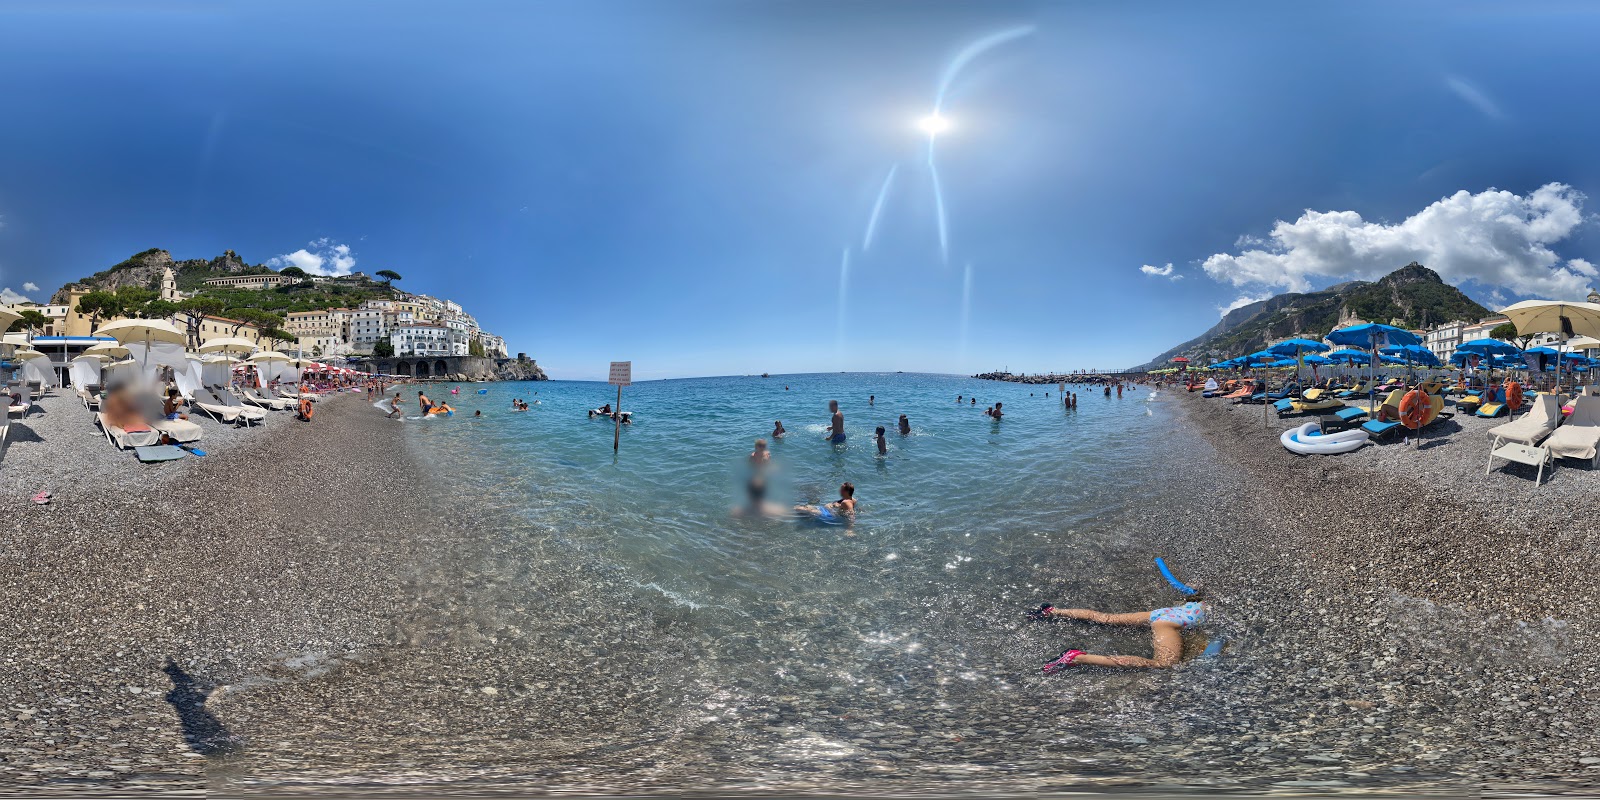 Φωτογραφία του Amalfi beach με επίπεδο καθαριότητας εν μέρει καθαρό